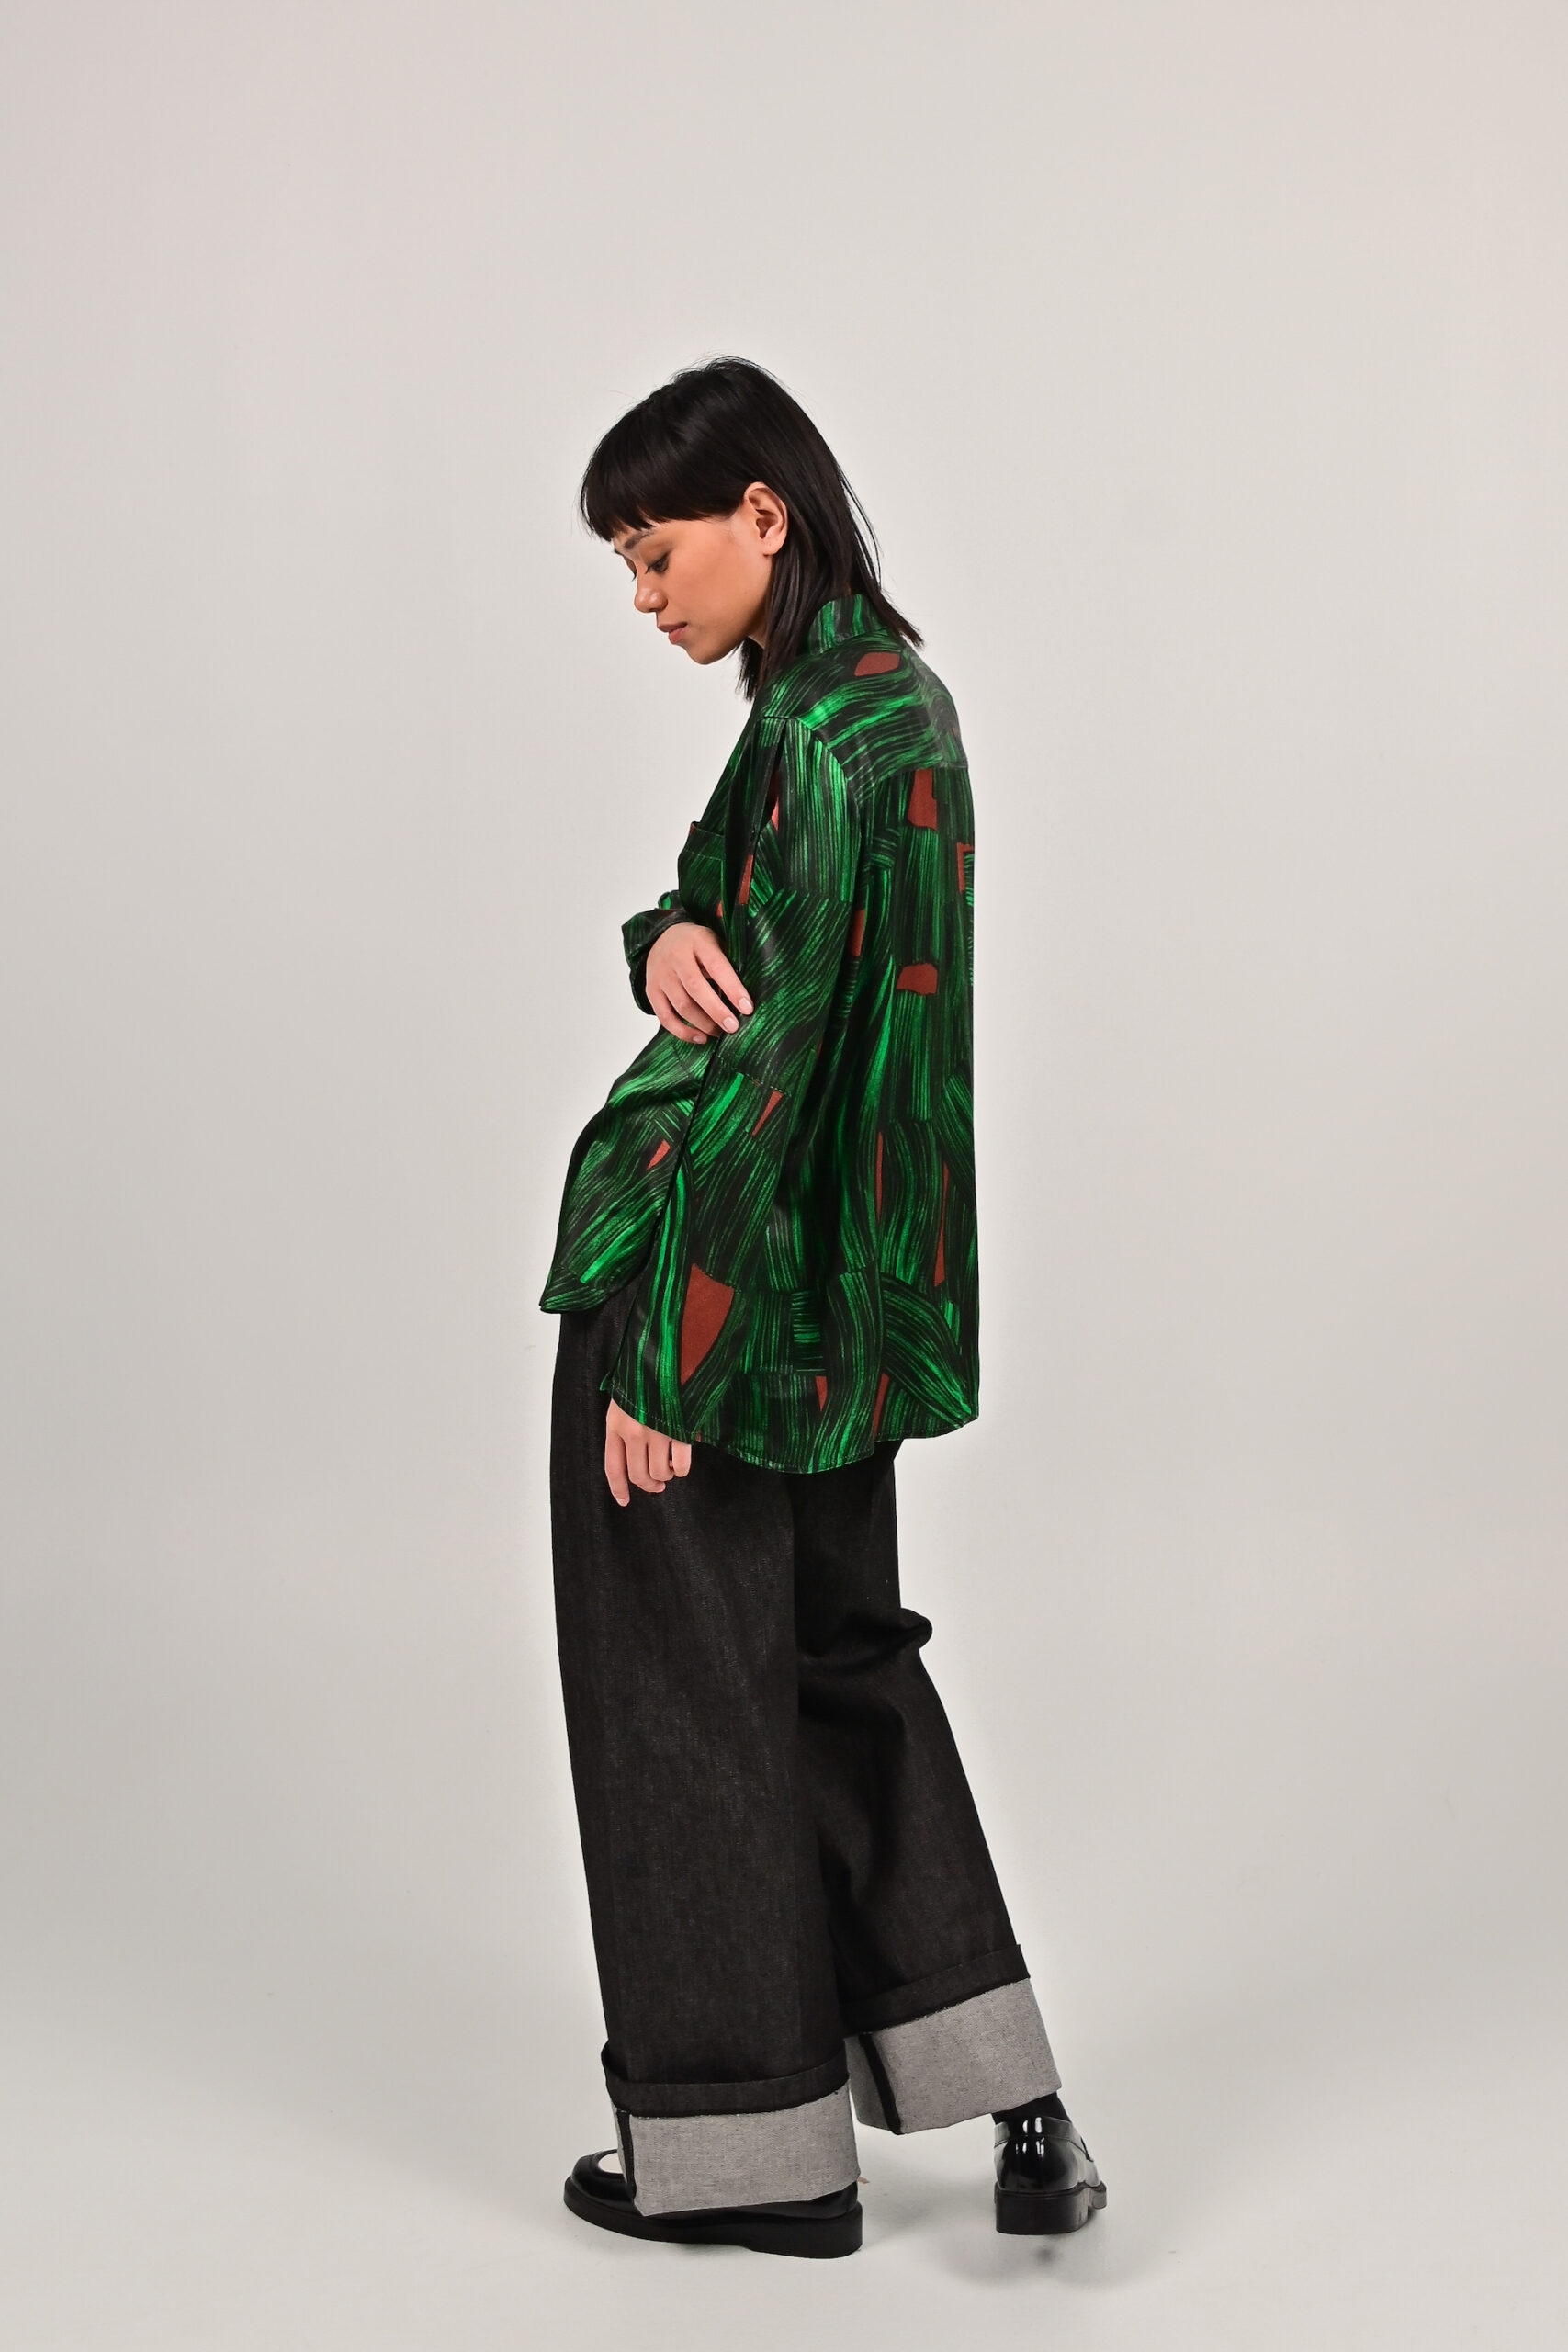 Della blouse - Ecovero print green - FAM the label